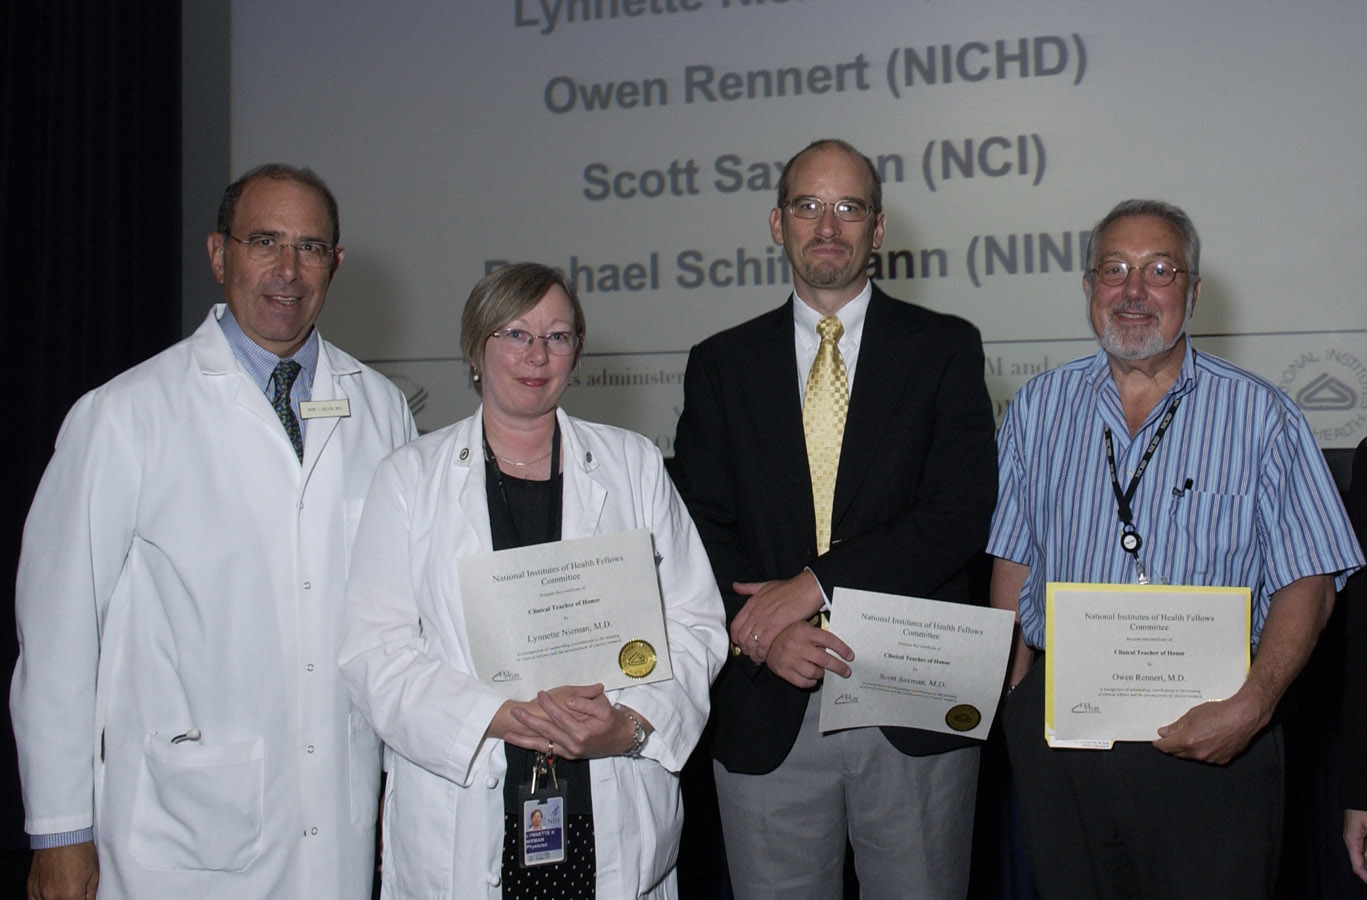 Dr. John Gallin, CC director (left), congratulates Clinical Teacher Award winner Dr. Lynnette Nieman and two of the finalists, Drs. Scott Saxman and Owen Rennert.